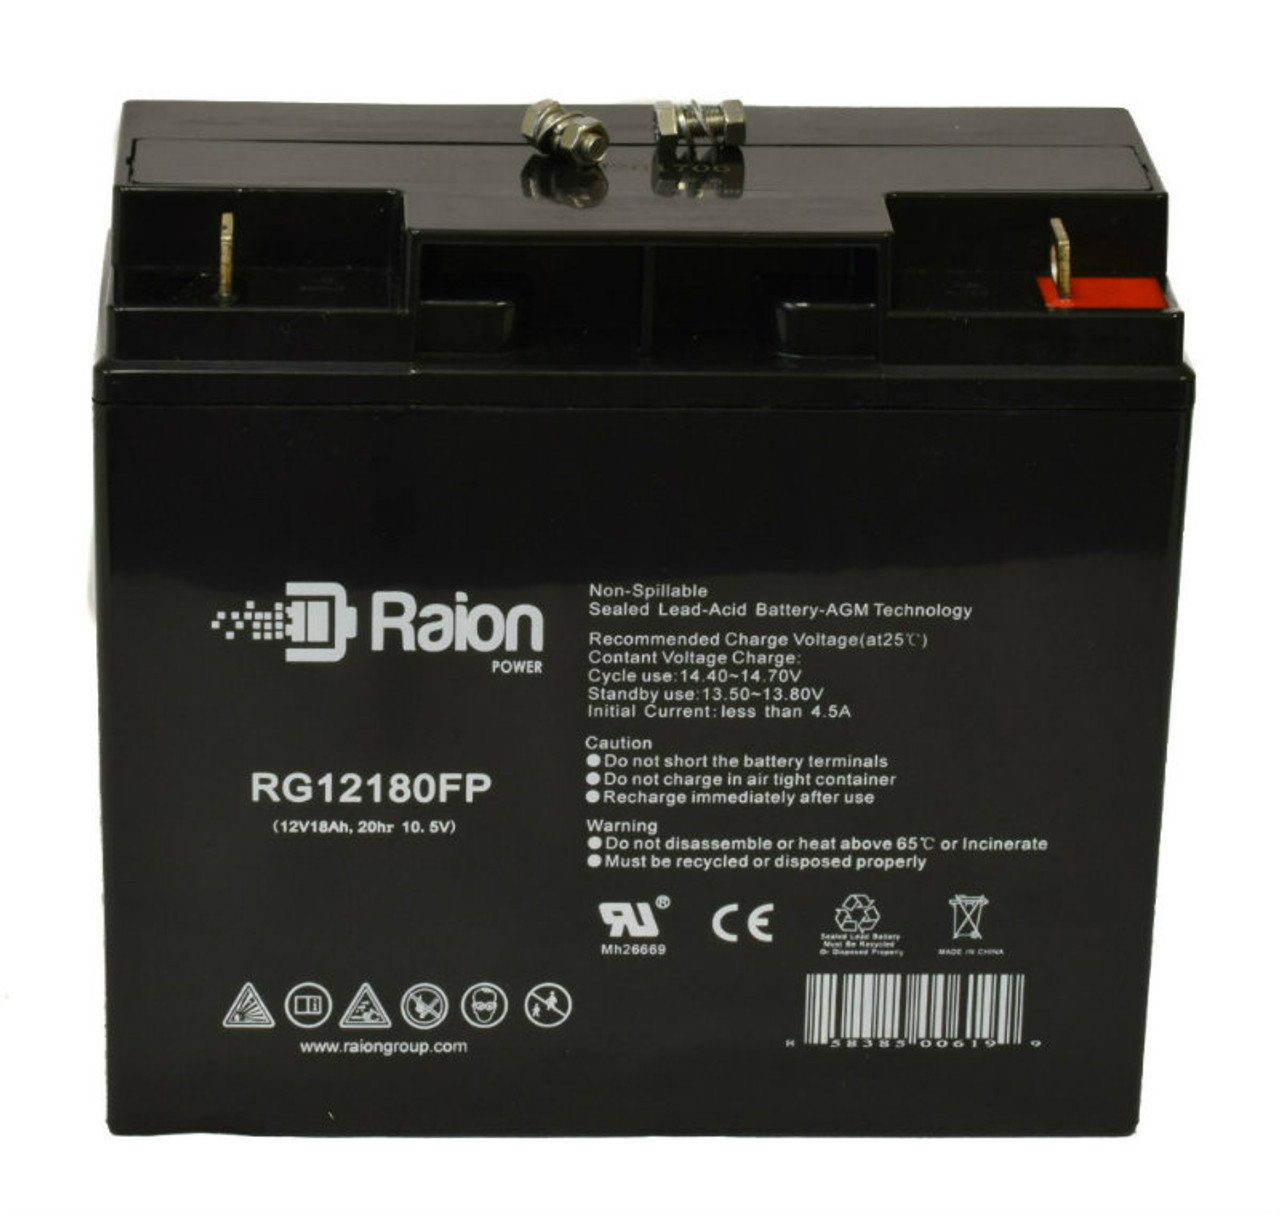 Raion Power RG12180FP 12V 18Ah Lead Acid Battery for Kypro Thunder